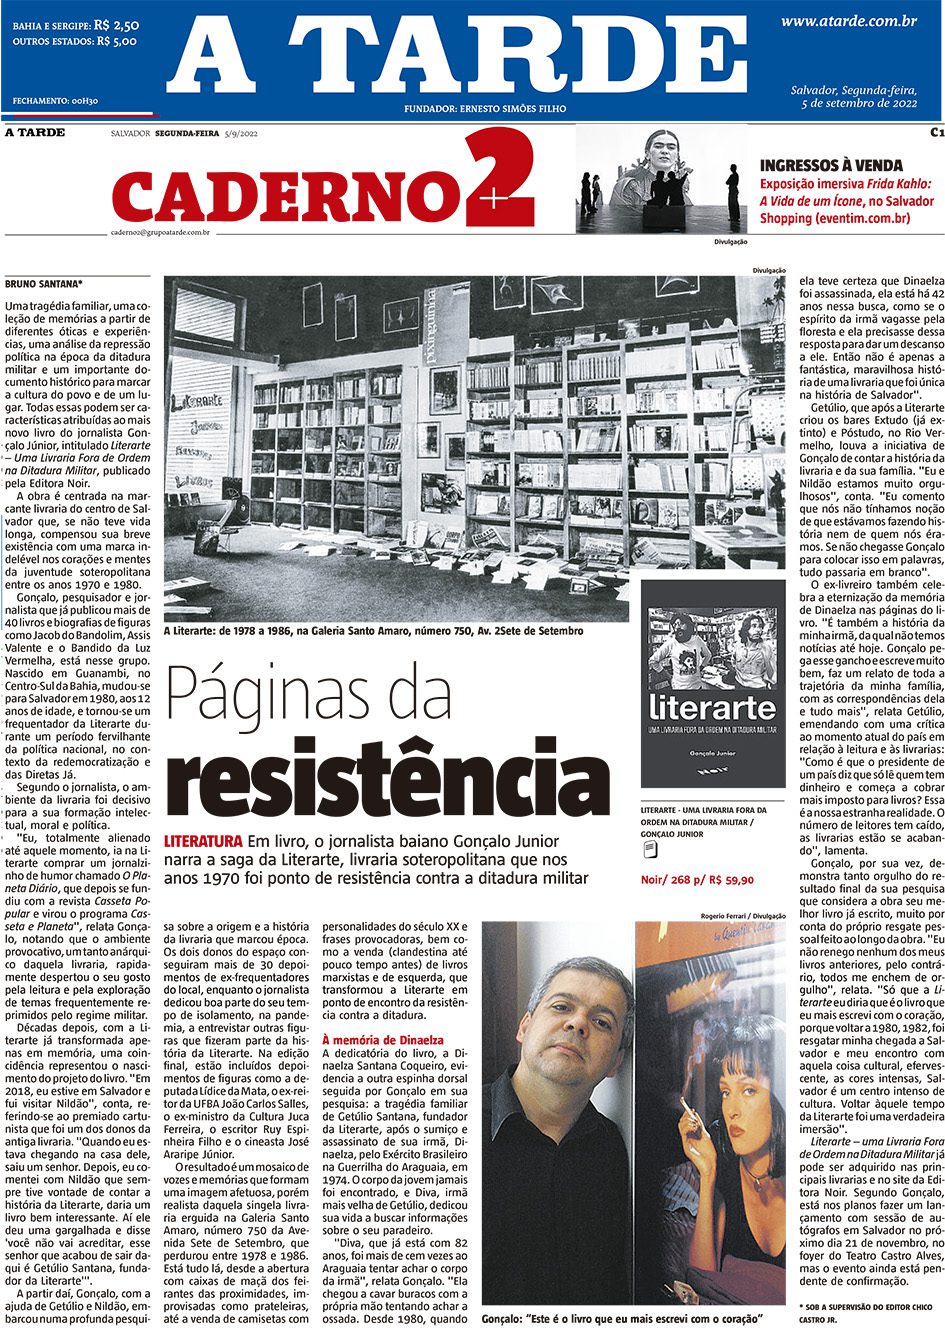 A Tarde: Lançamento do livro Literarte – A livraria que virou trincheira contra a ditadura